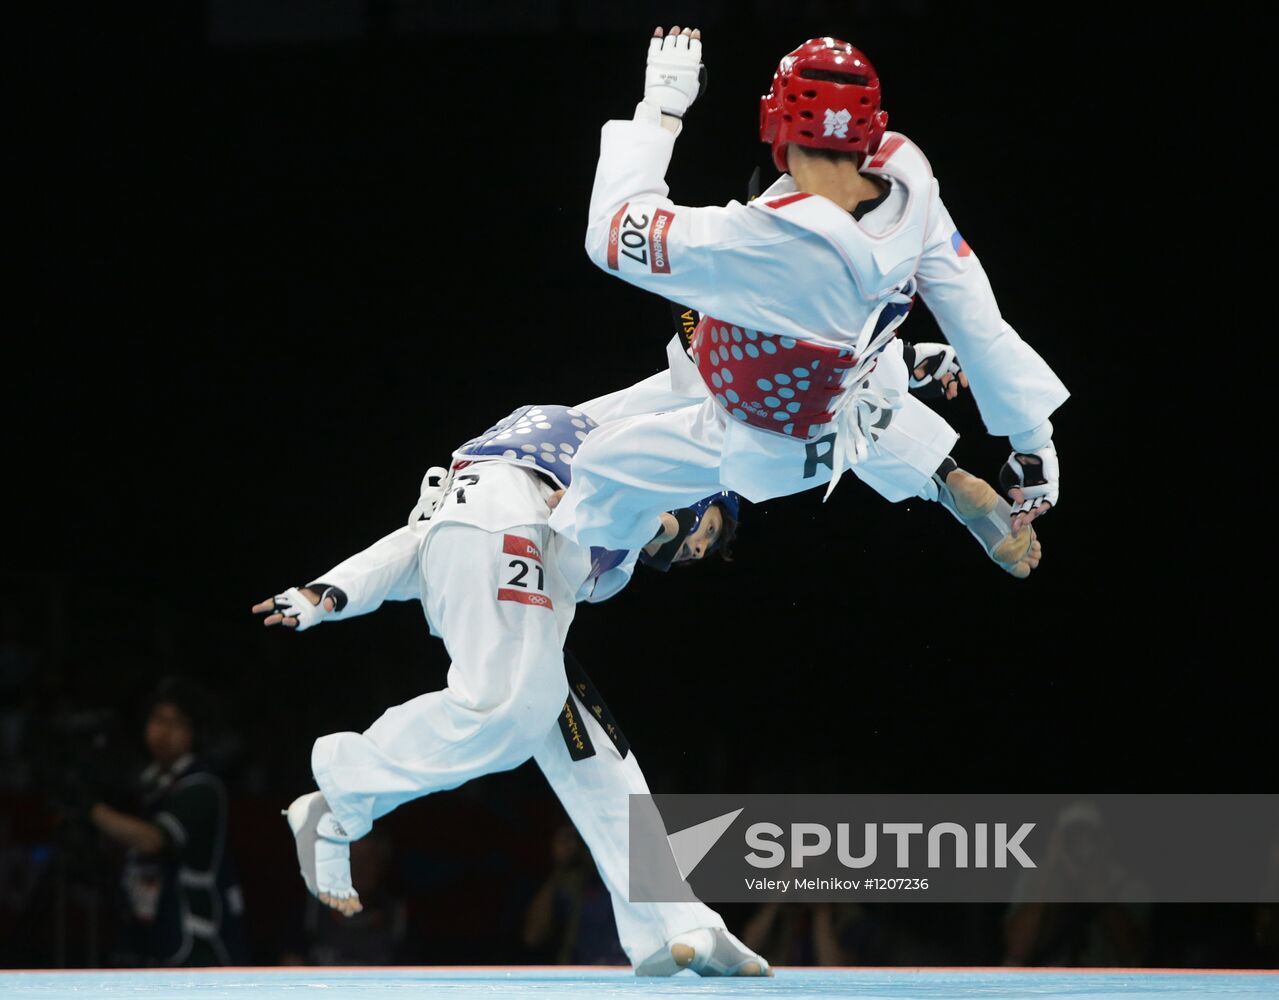 Olympics 2012 Taekwondo. Day One